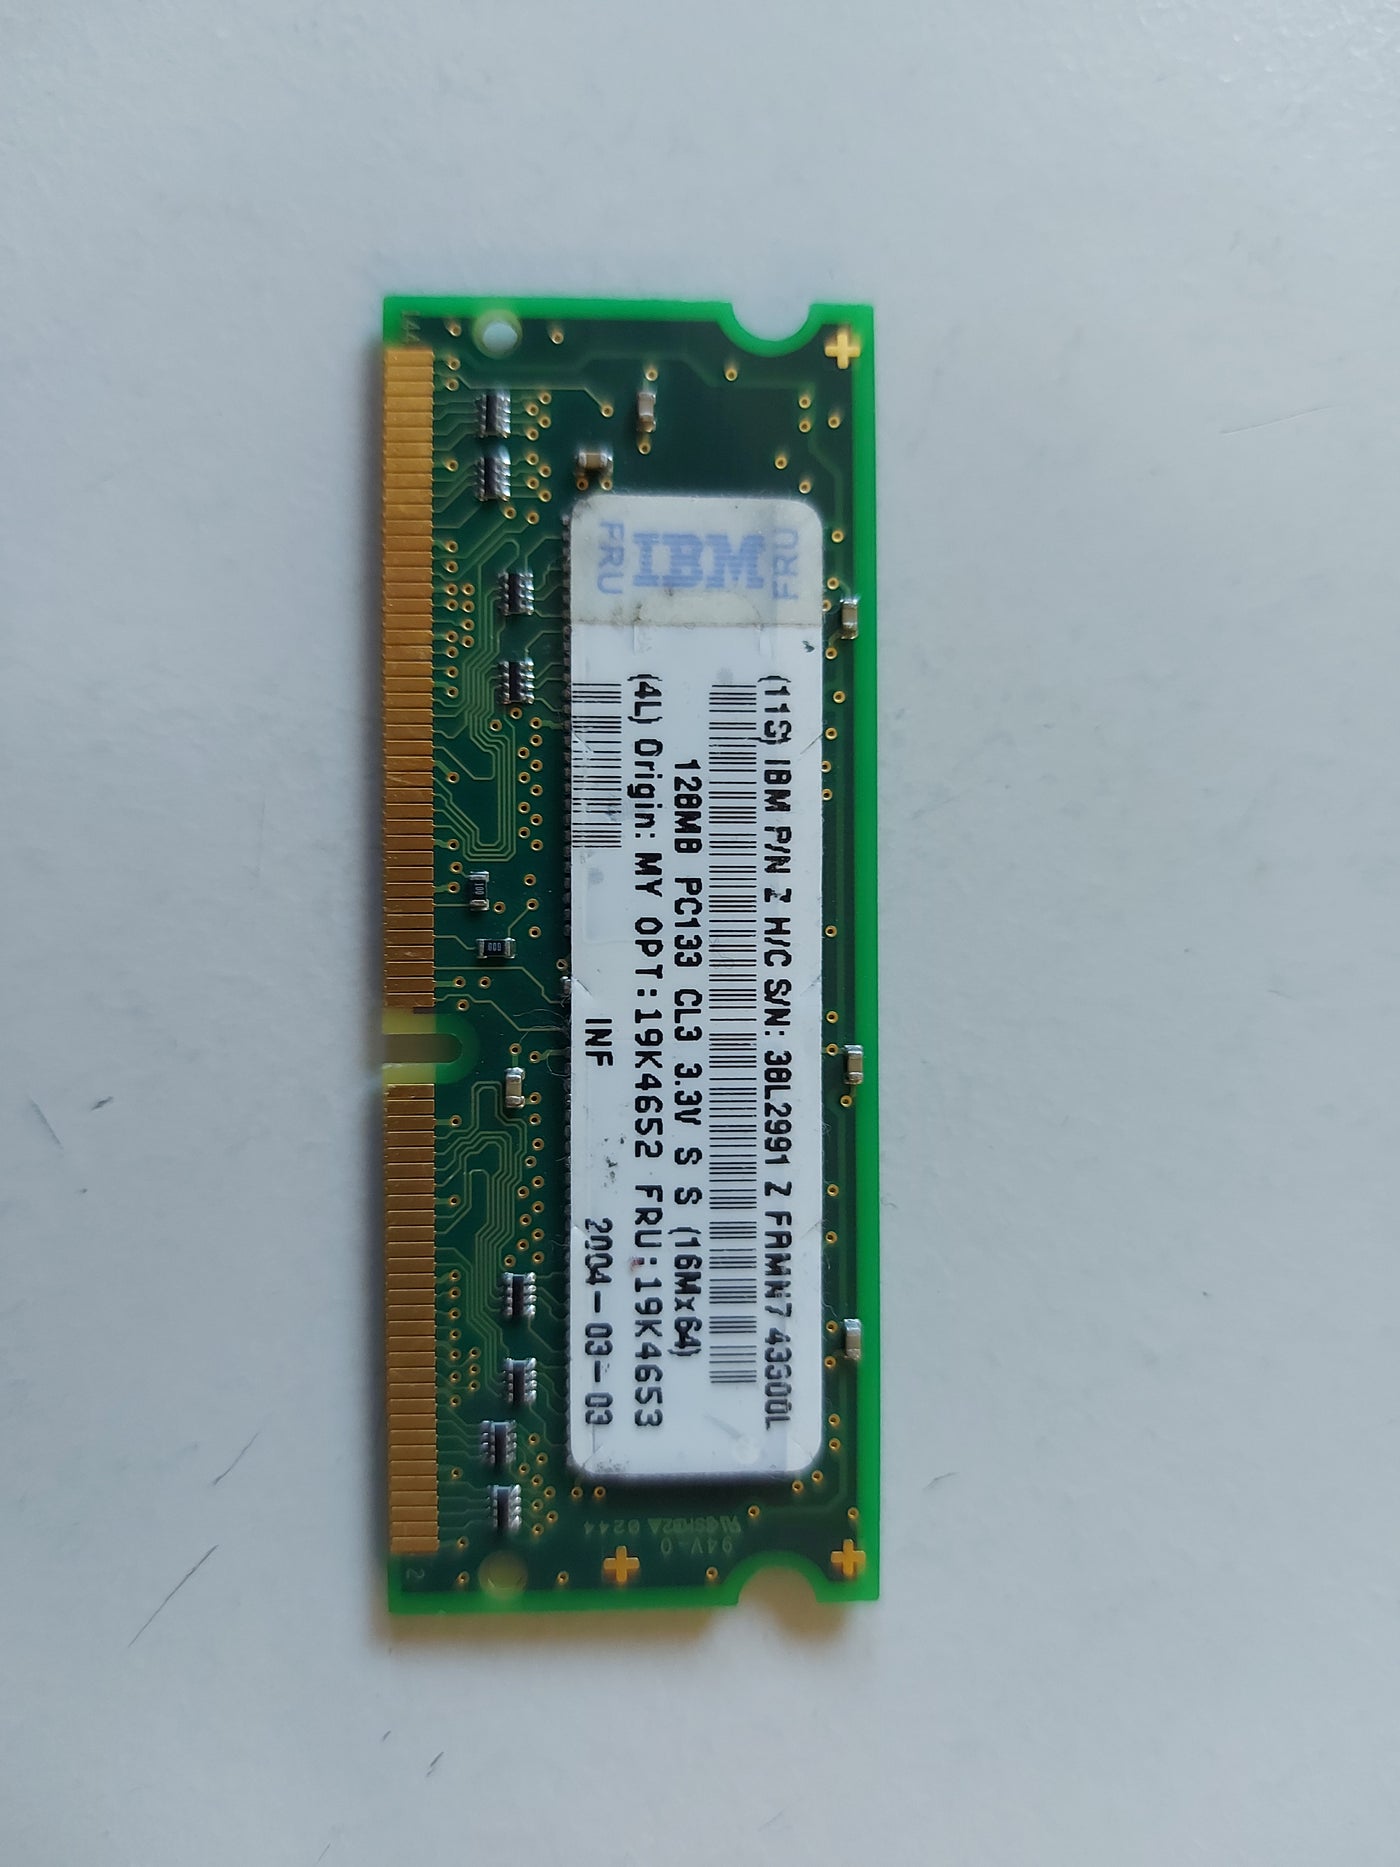 Hynix IBM 128MB SODIMM CL3 PC133 DDR SDRAM HYS64V16200GDL-7.5-D 19K4653